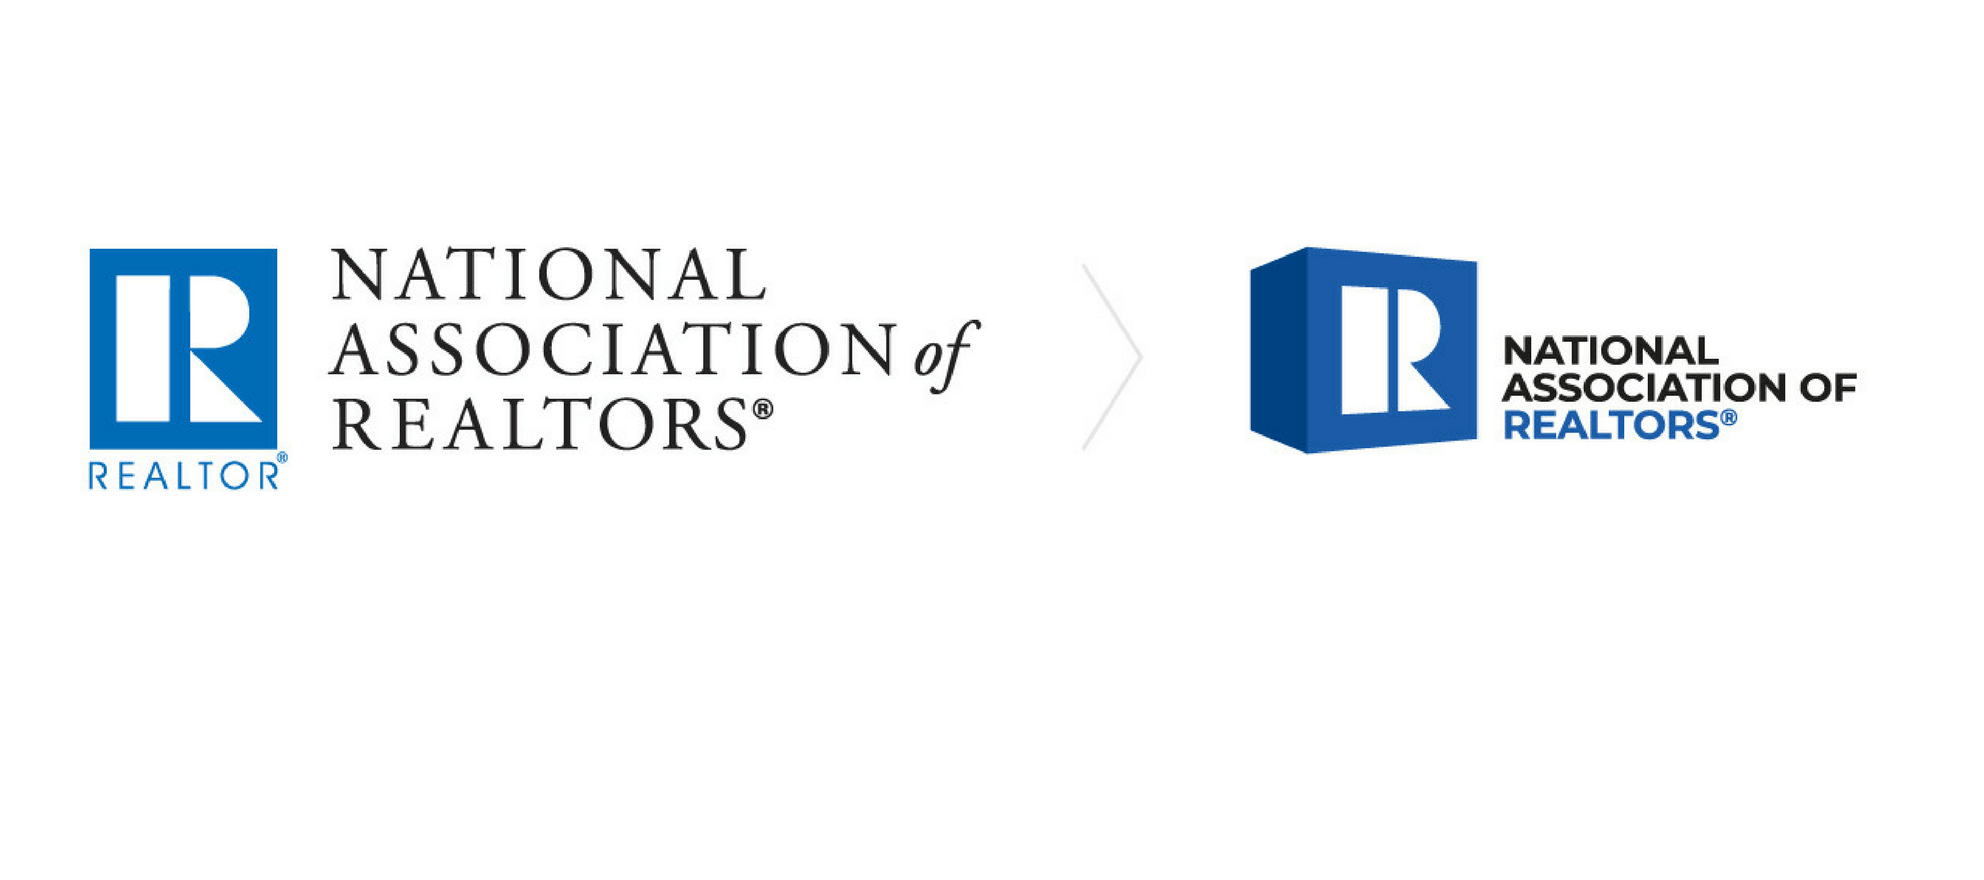 Three-Dimensional Logo - Realtors React To NAR's New Three Dimensional Logo